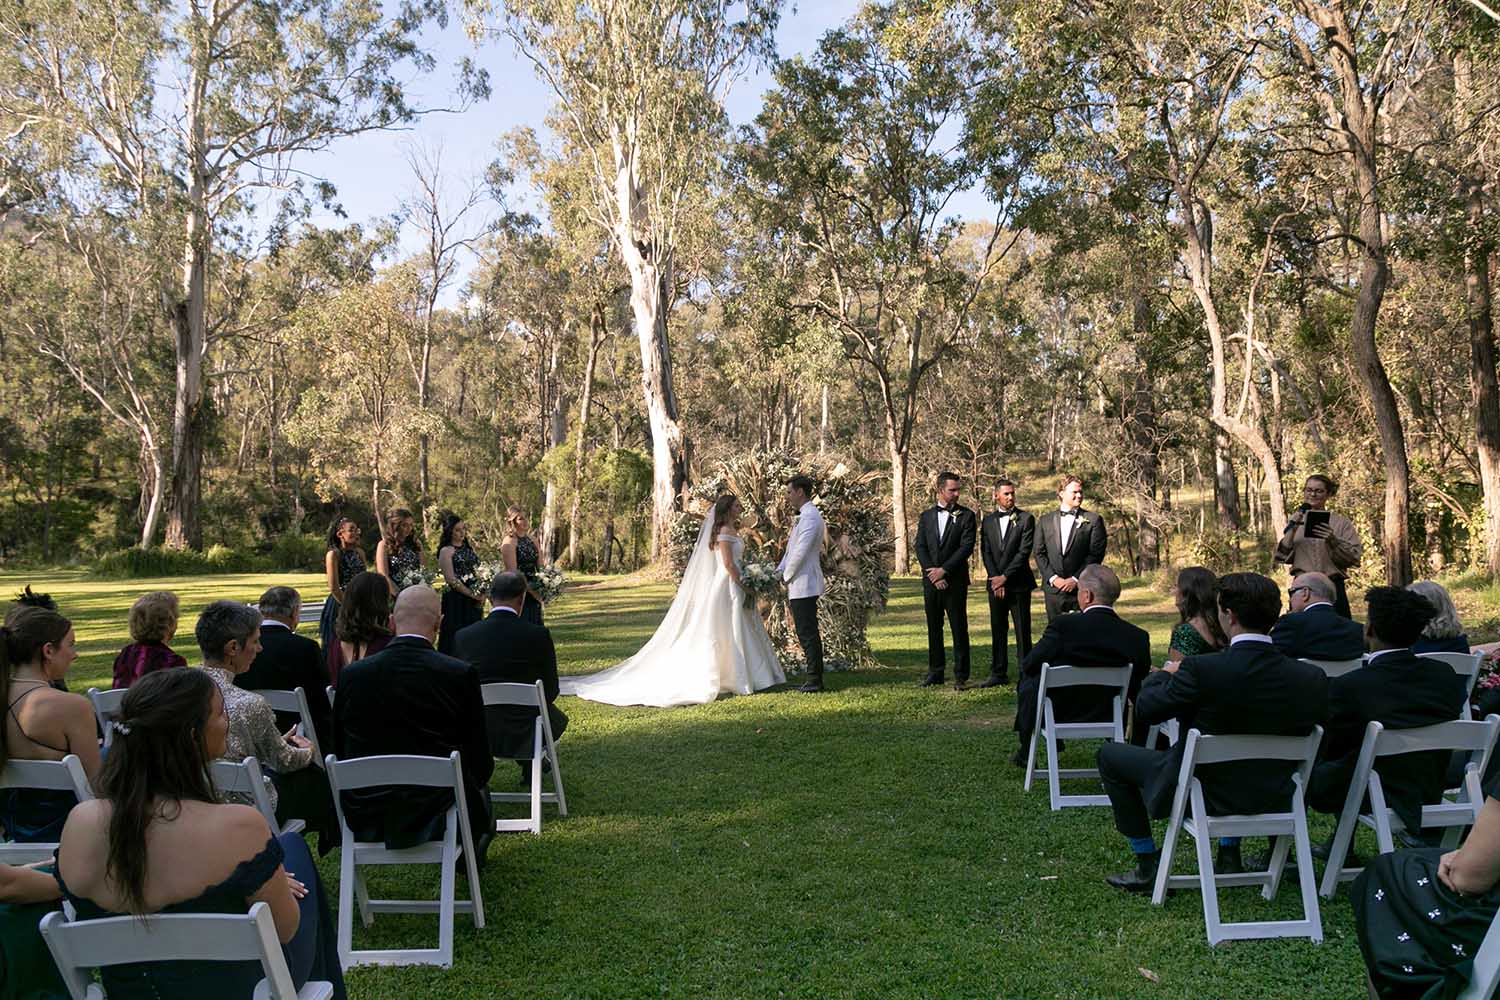 Wedding Photography - Ceremony